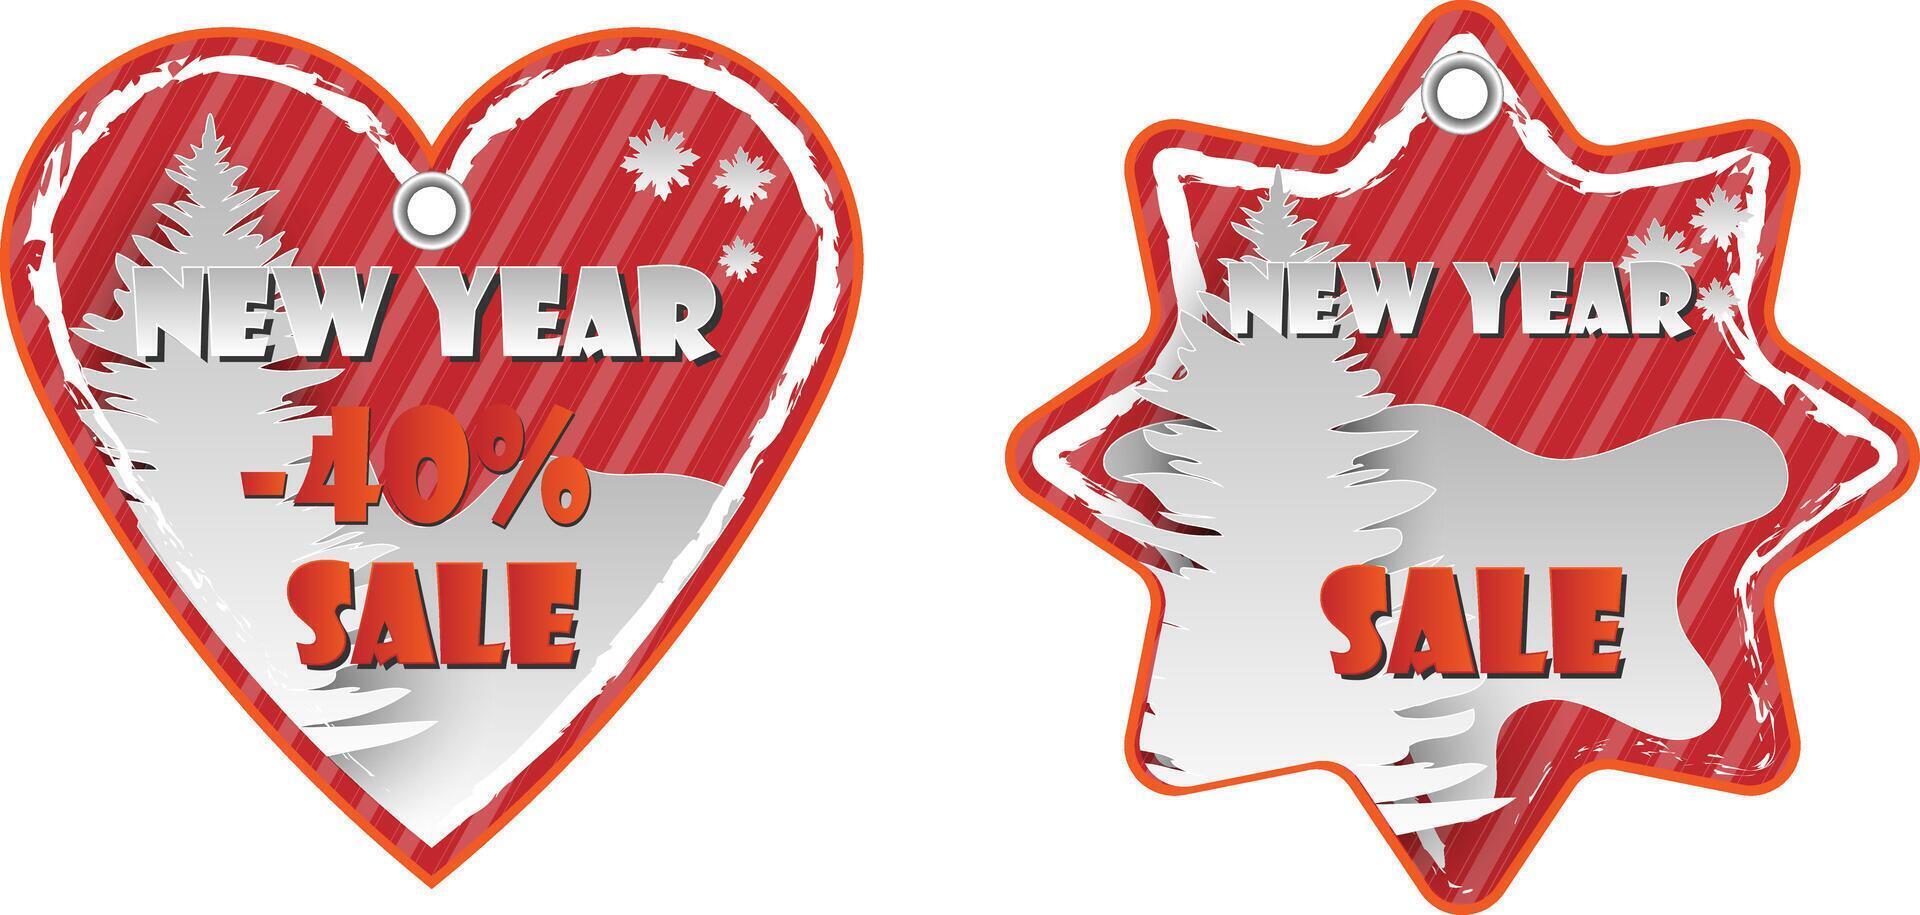 corazón y estrella forma rojo nuevo año, Navidad rebaja papel etiquetas conjunto con papel cortar elementos con descuento texto para Navidad fiesta compras promoción. vector ilustración.